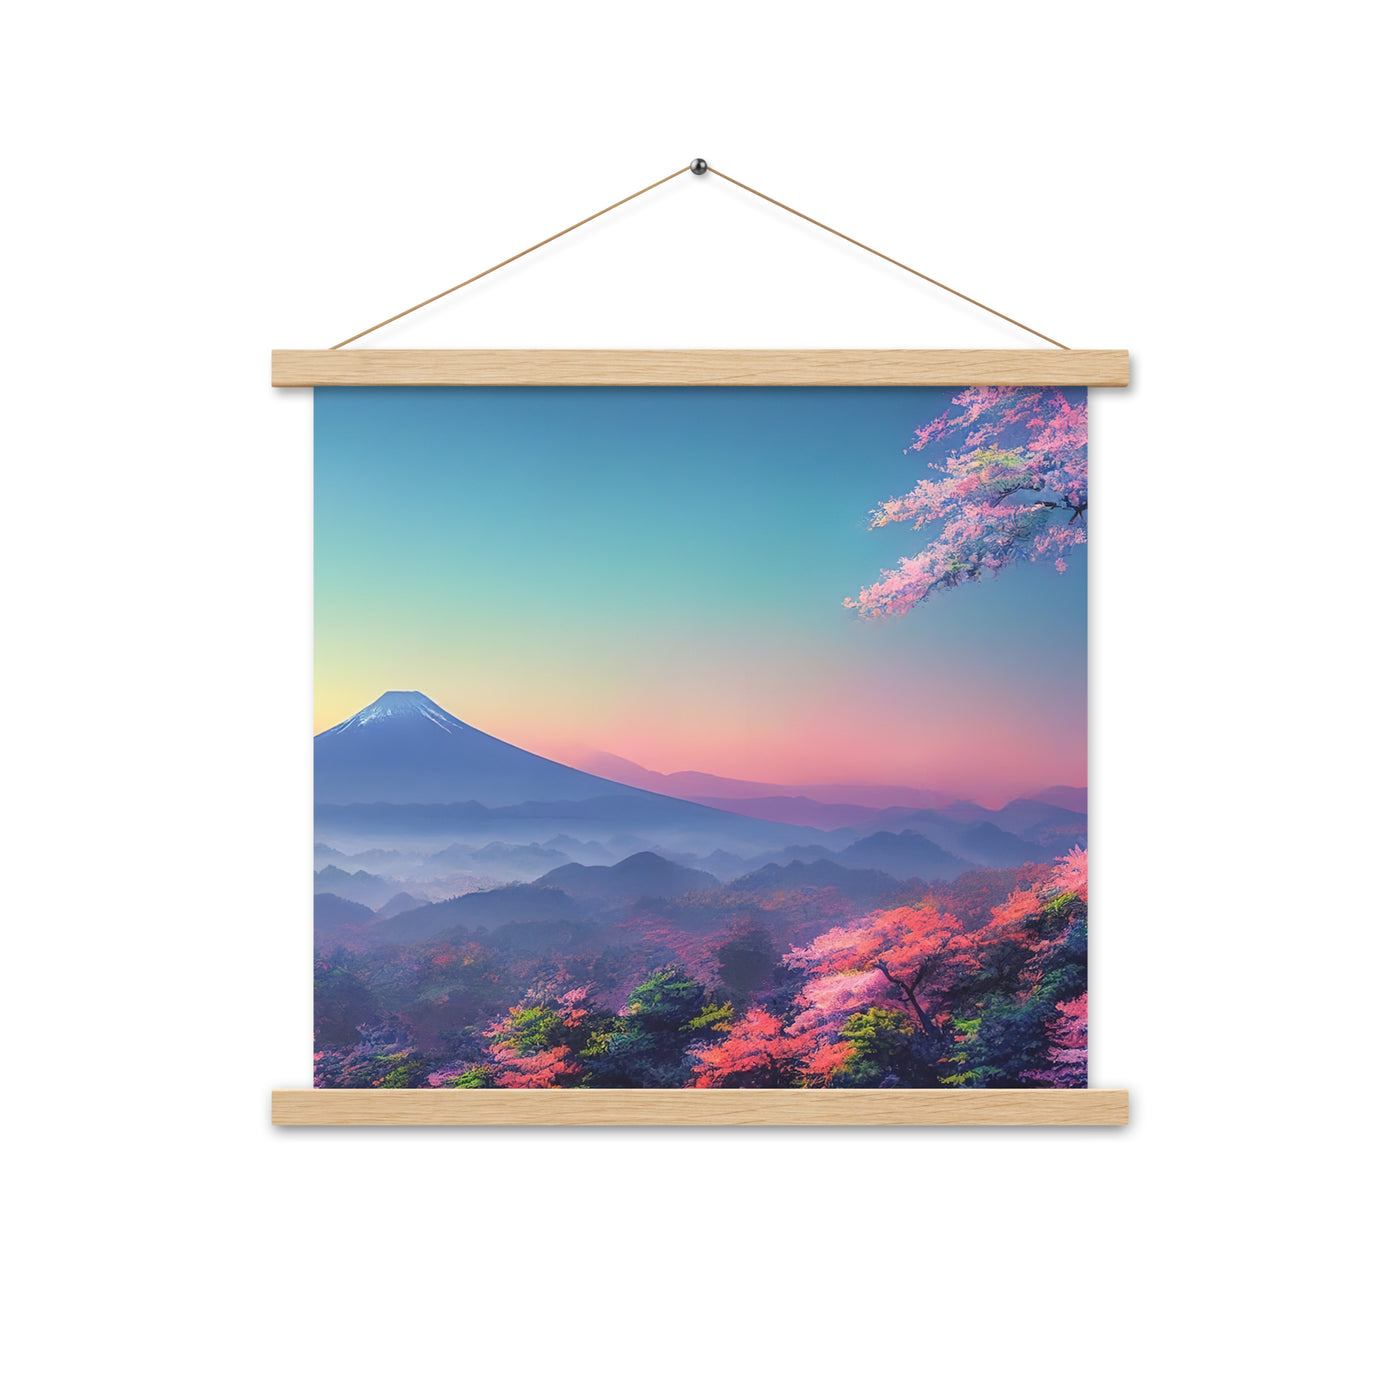 Berg und Wald mit pinken Bäumen - Landschaftsmalerei - Premium Poster mit Aufhängung berge xxx Oak 45.7 x 45.7 cm